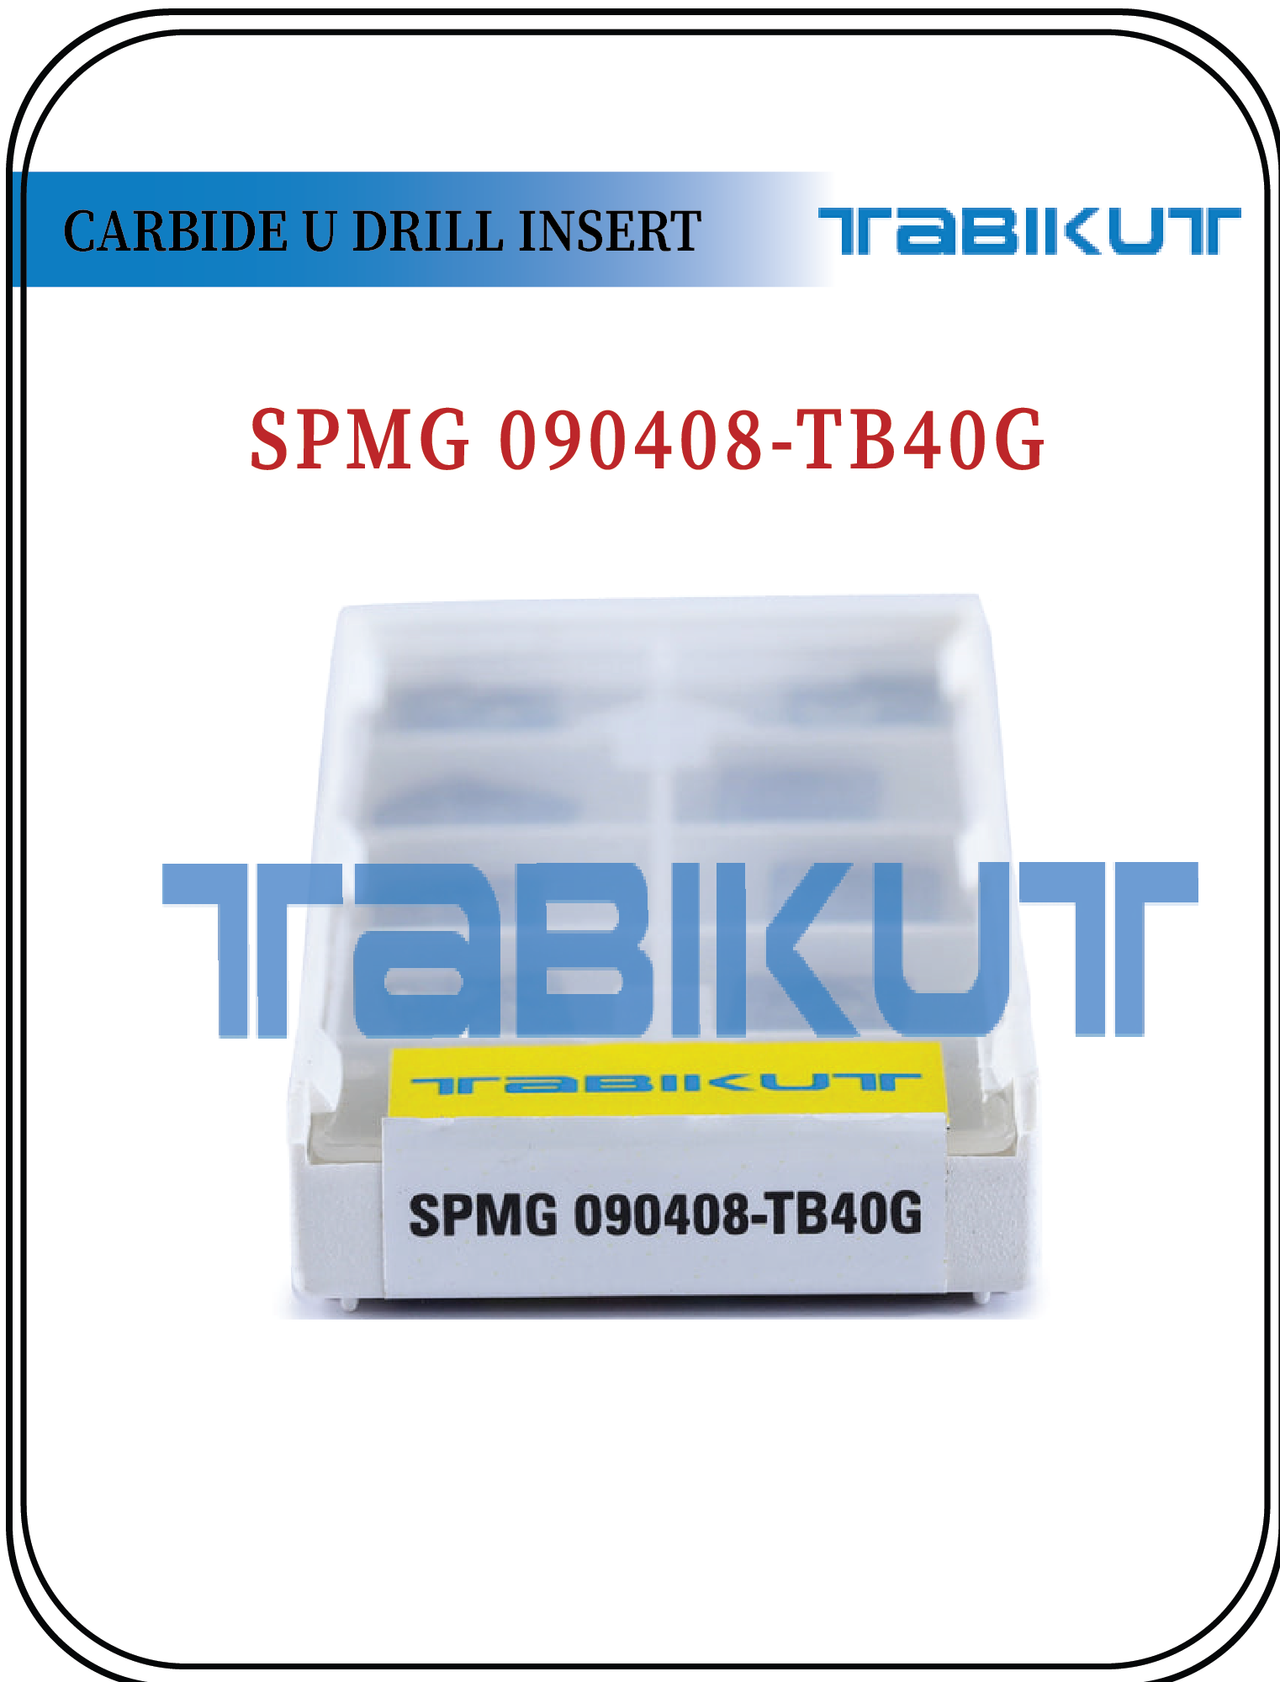 SPMG090408 TABIKUT Carbide Drilling Insert